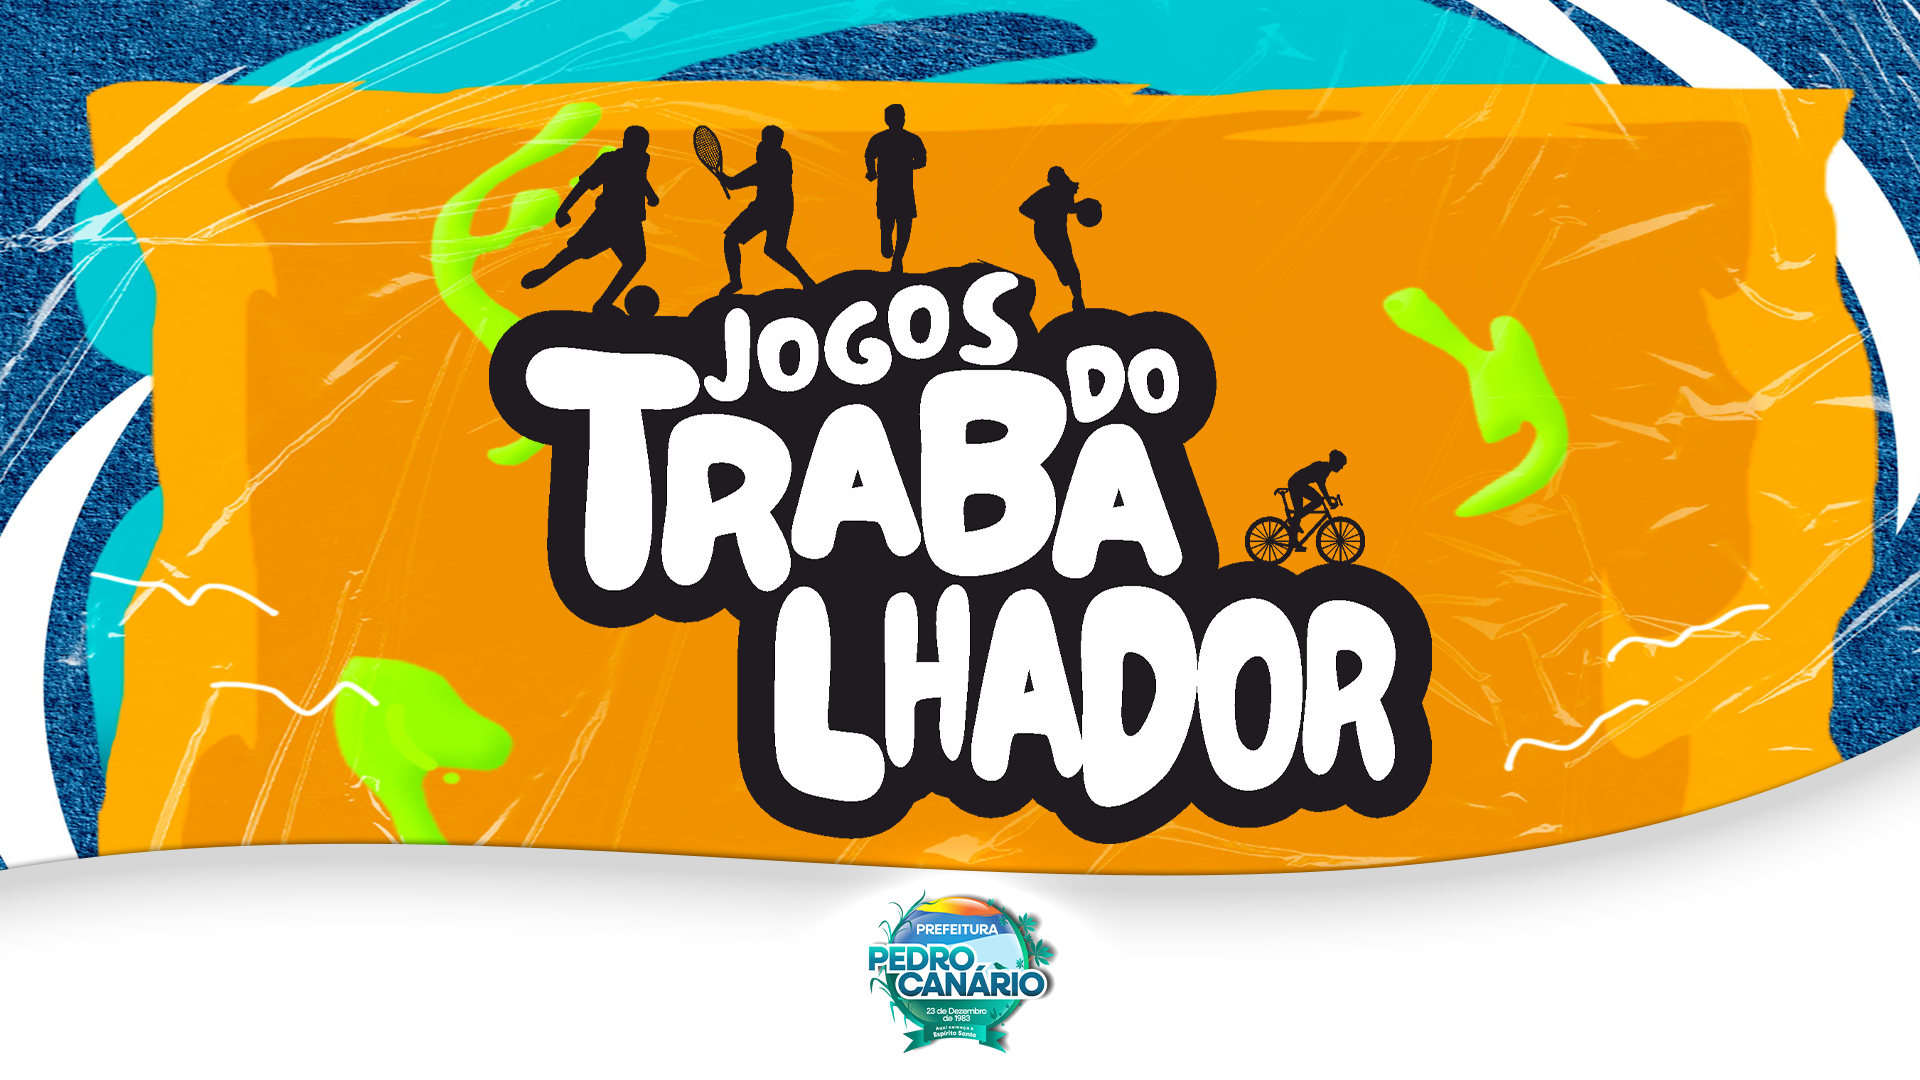 NOTÍCIA: Prefeitura de Pedro Canário organiza mais uma edição dos Jogos do Trabalhador